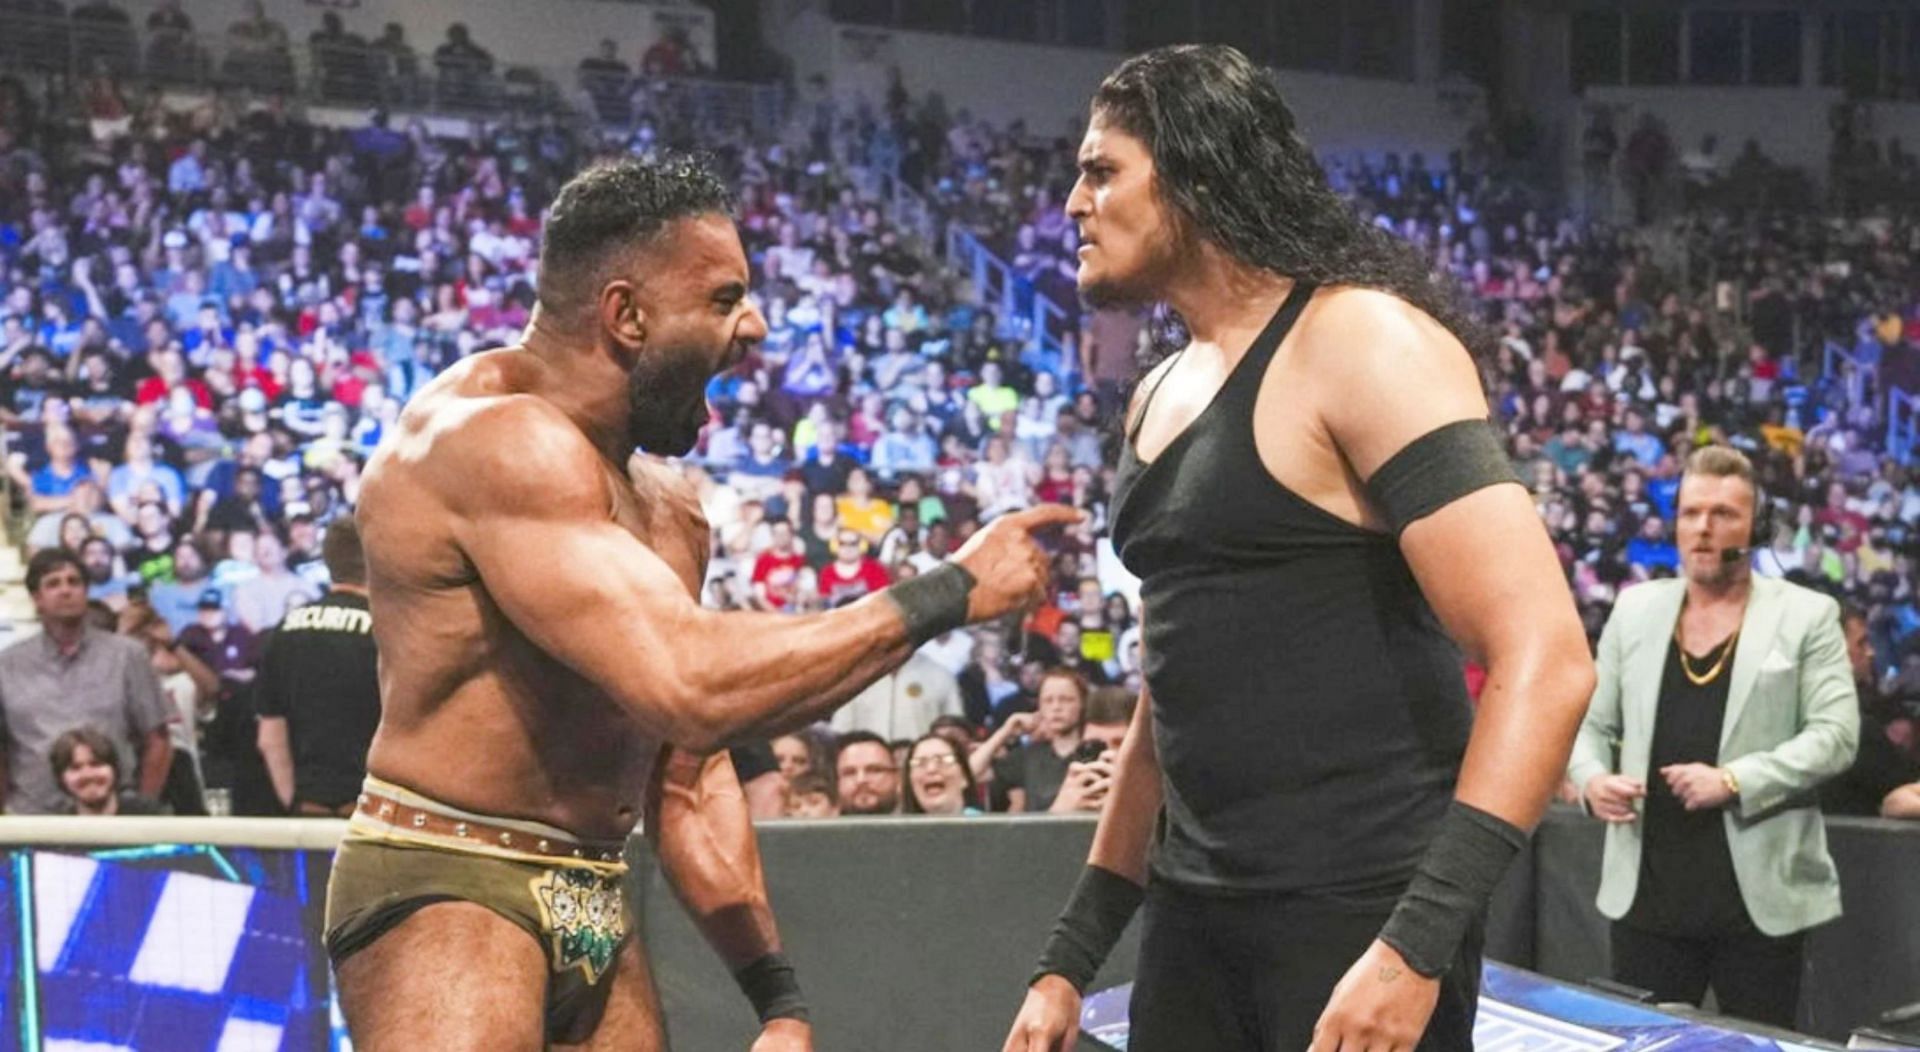 WWE Sunday Stunner में देखने को मिले कई जबरदस्त मुकाबले 